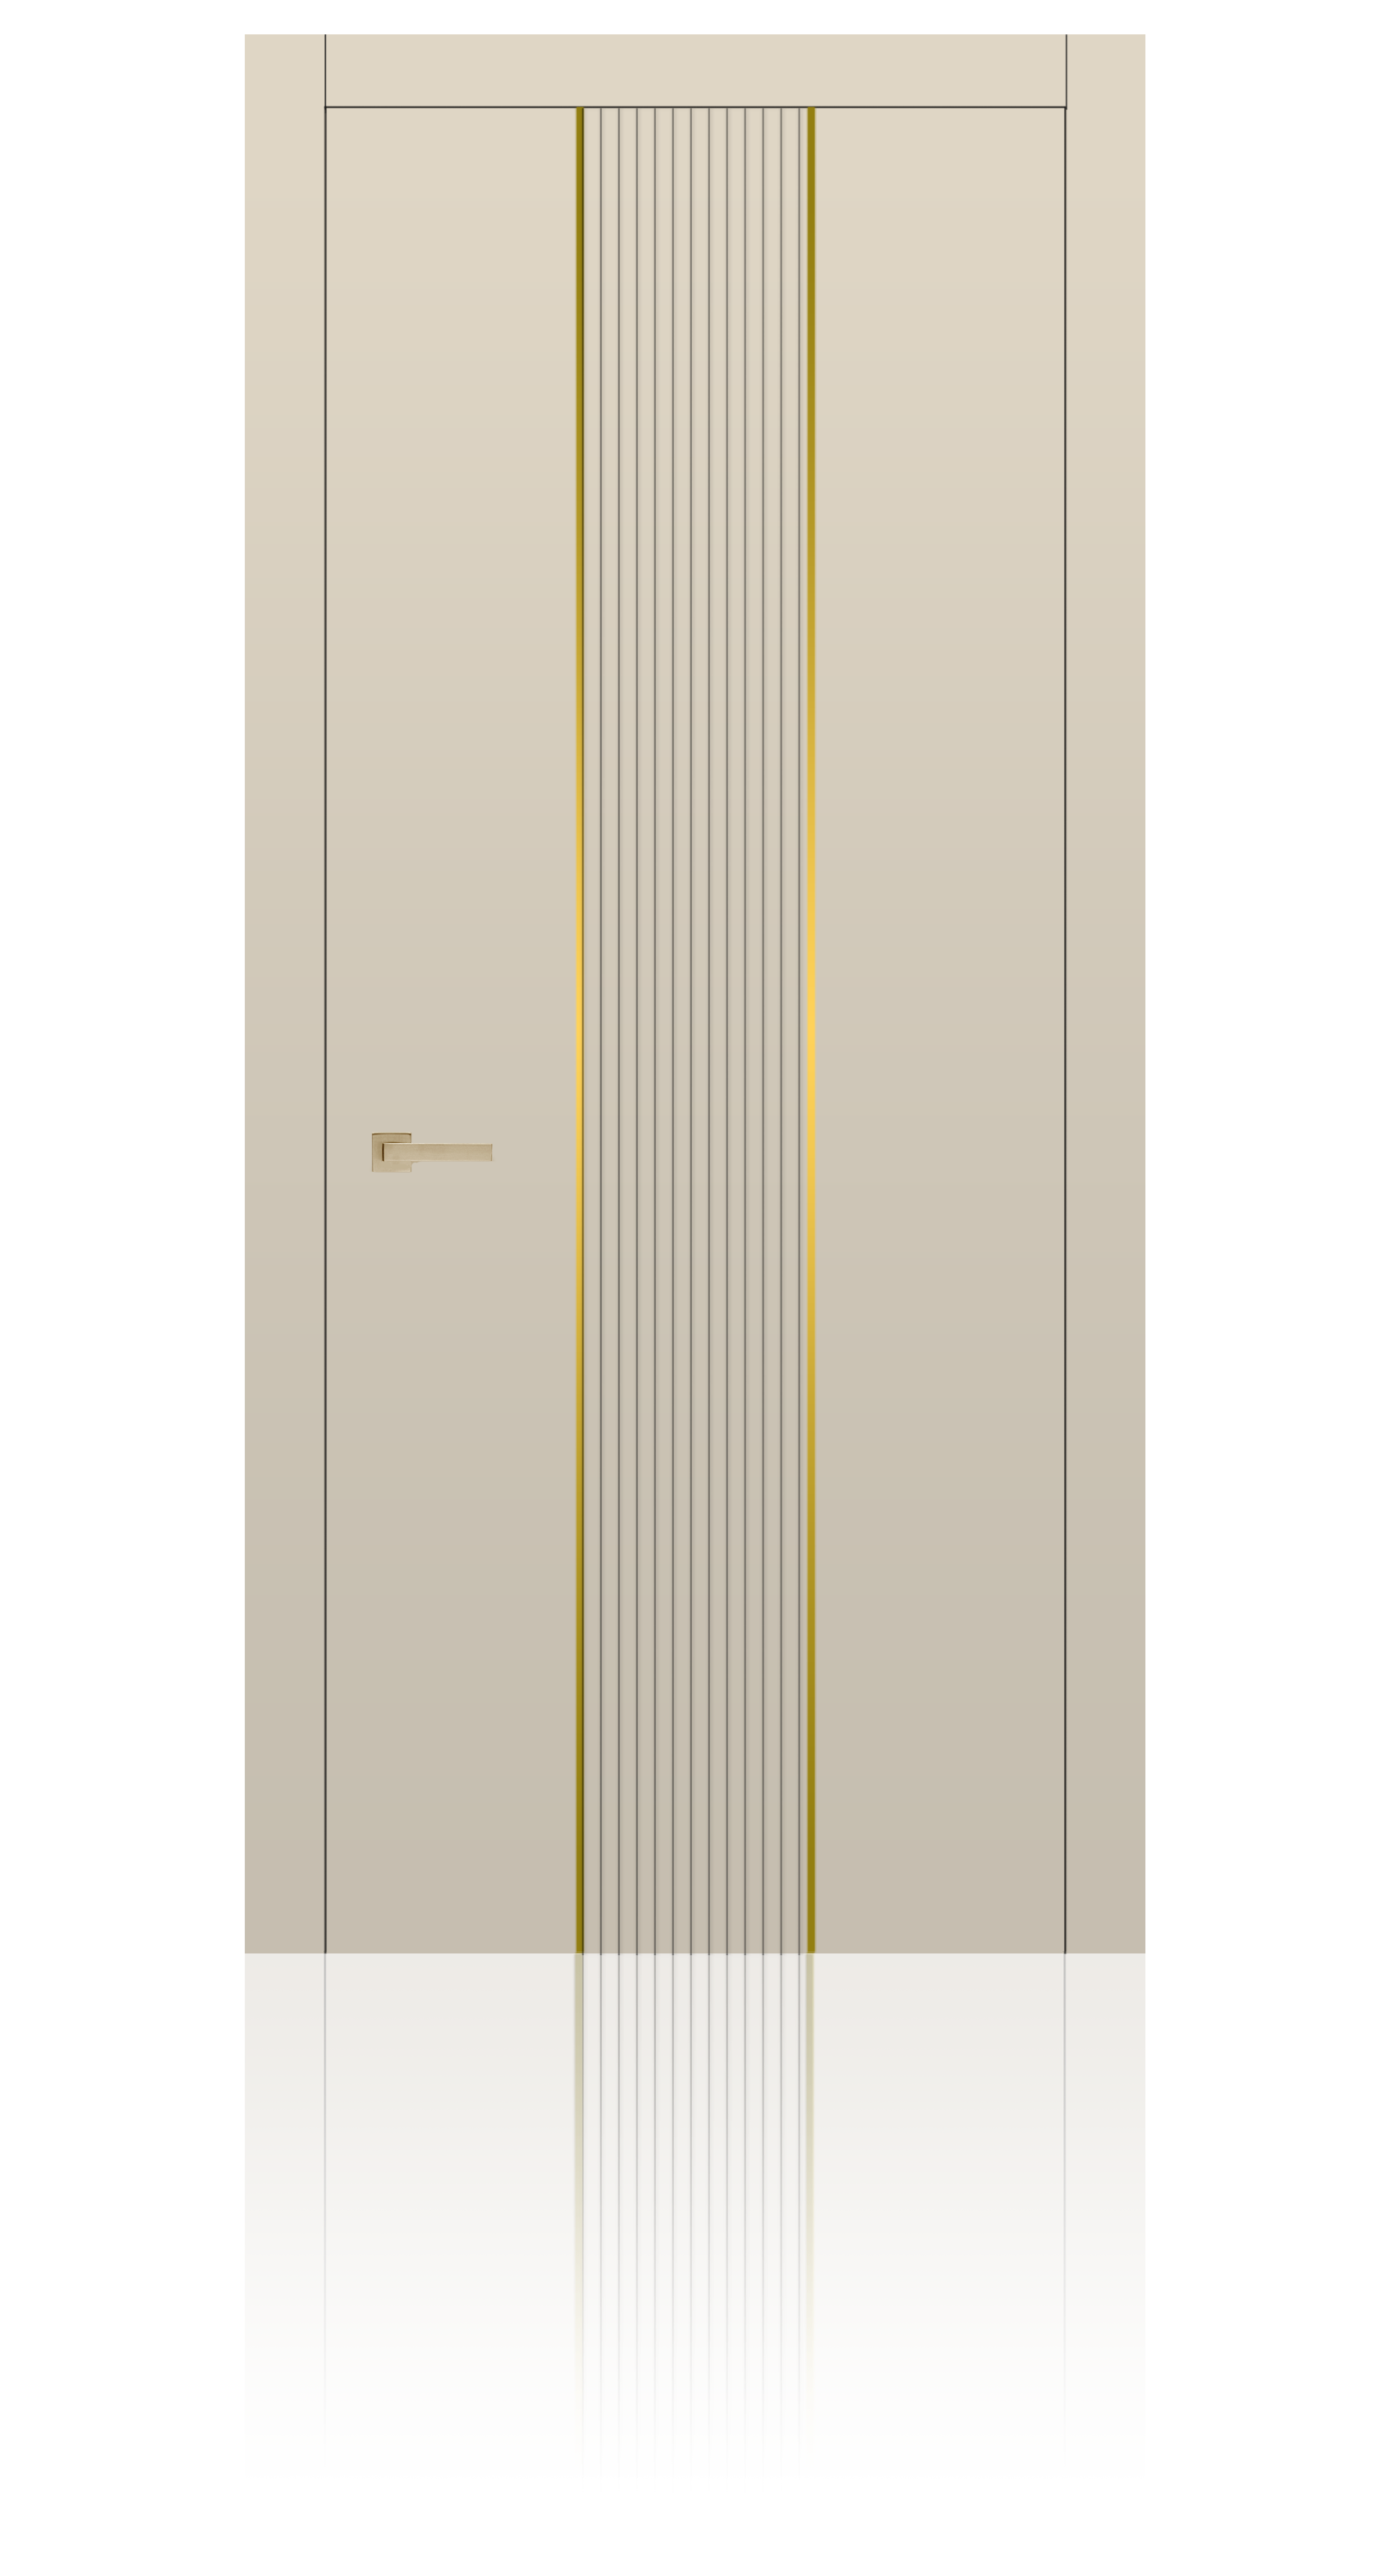 Межкомнатная дверь Урбан-4 глухая эмаль ral 1013 24960